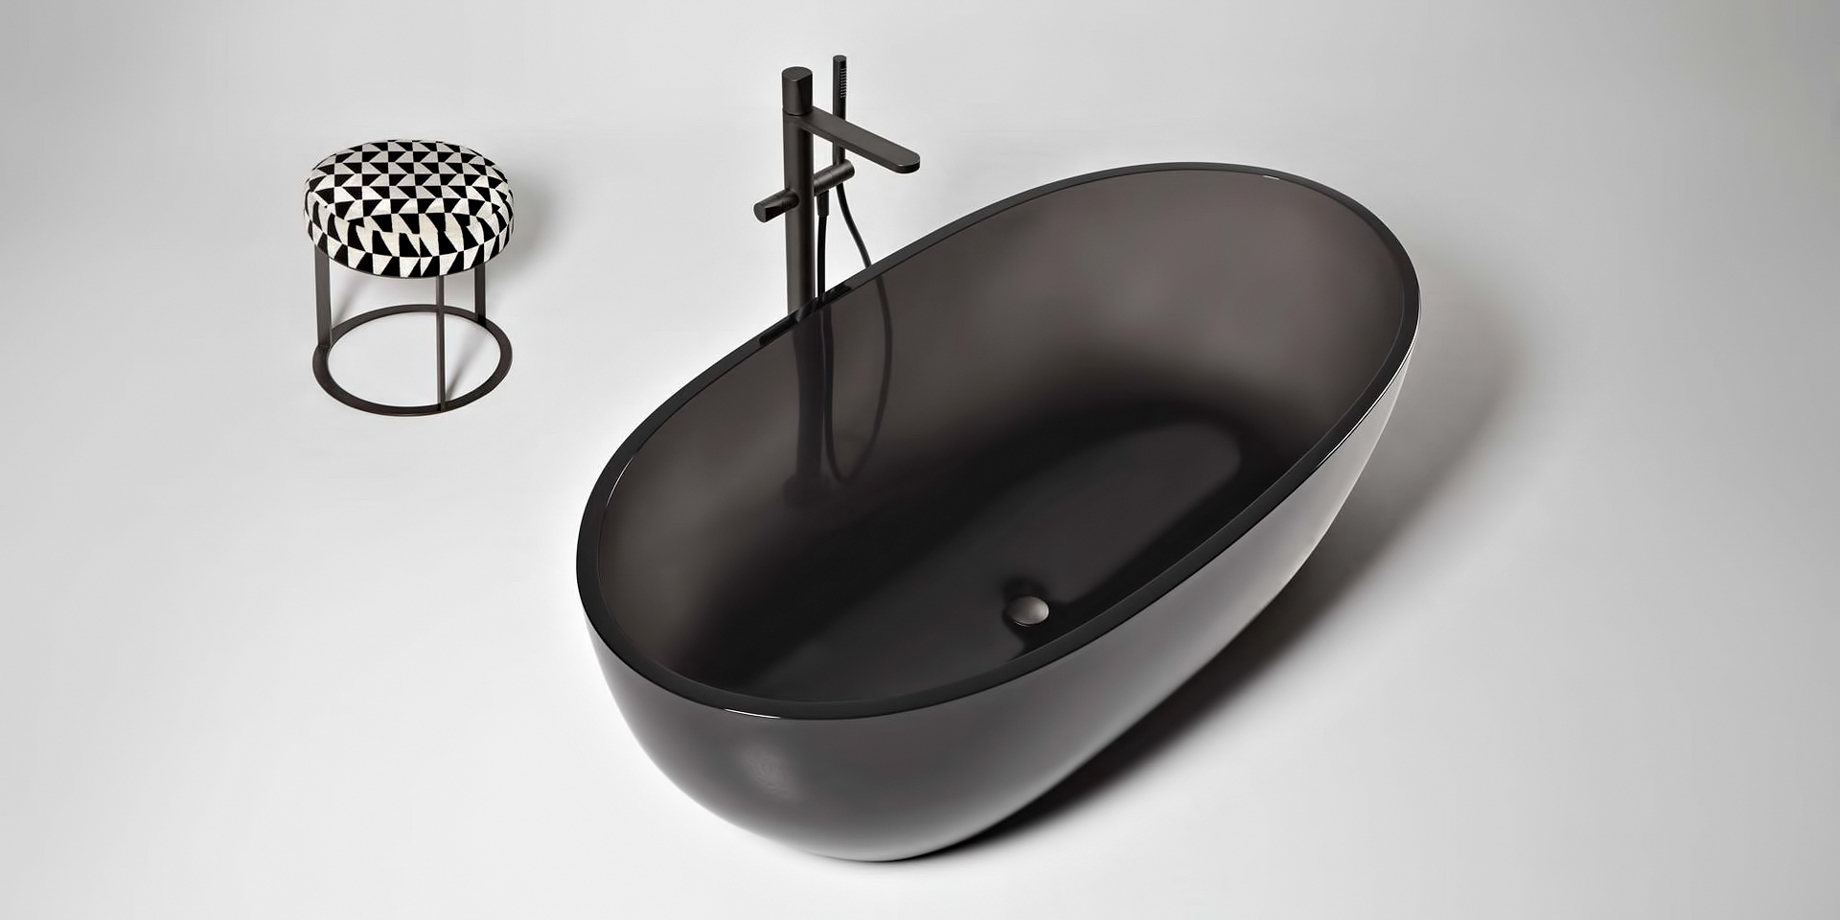 Transparent REFLEX Cristalmood Resin Luxury Bathtub by AL Studio – Fume